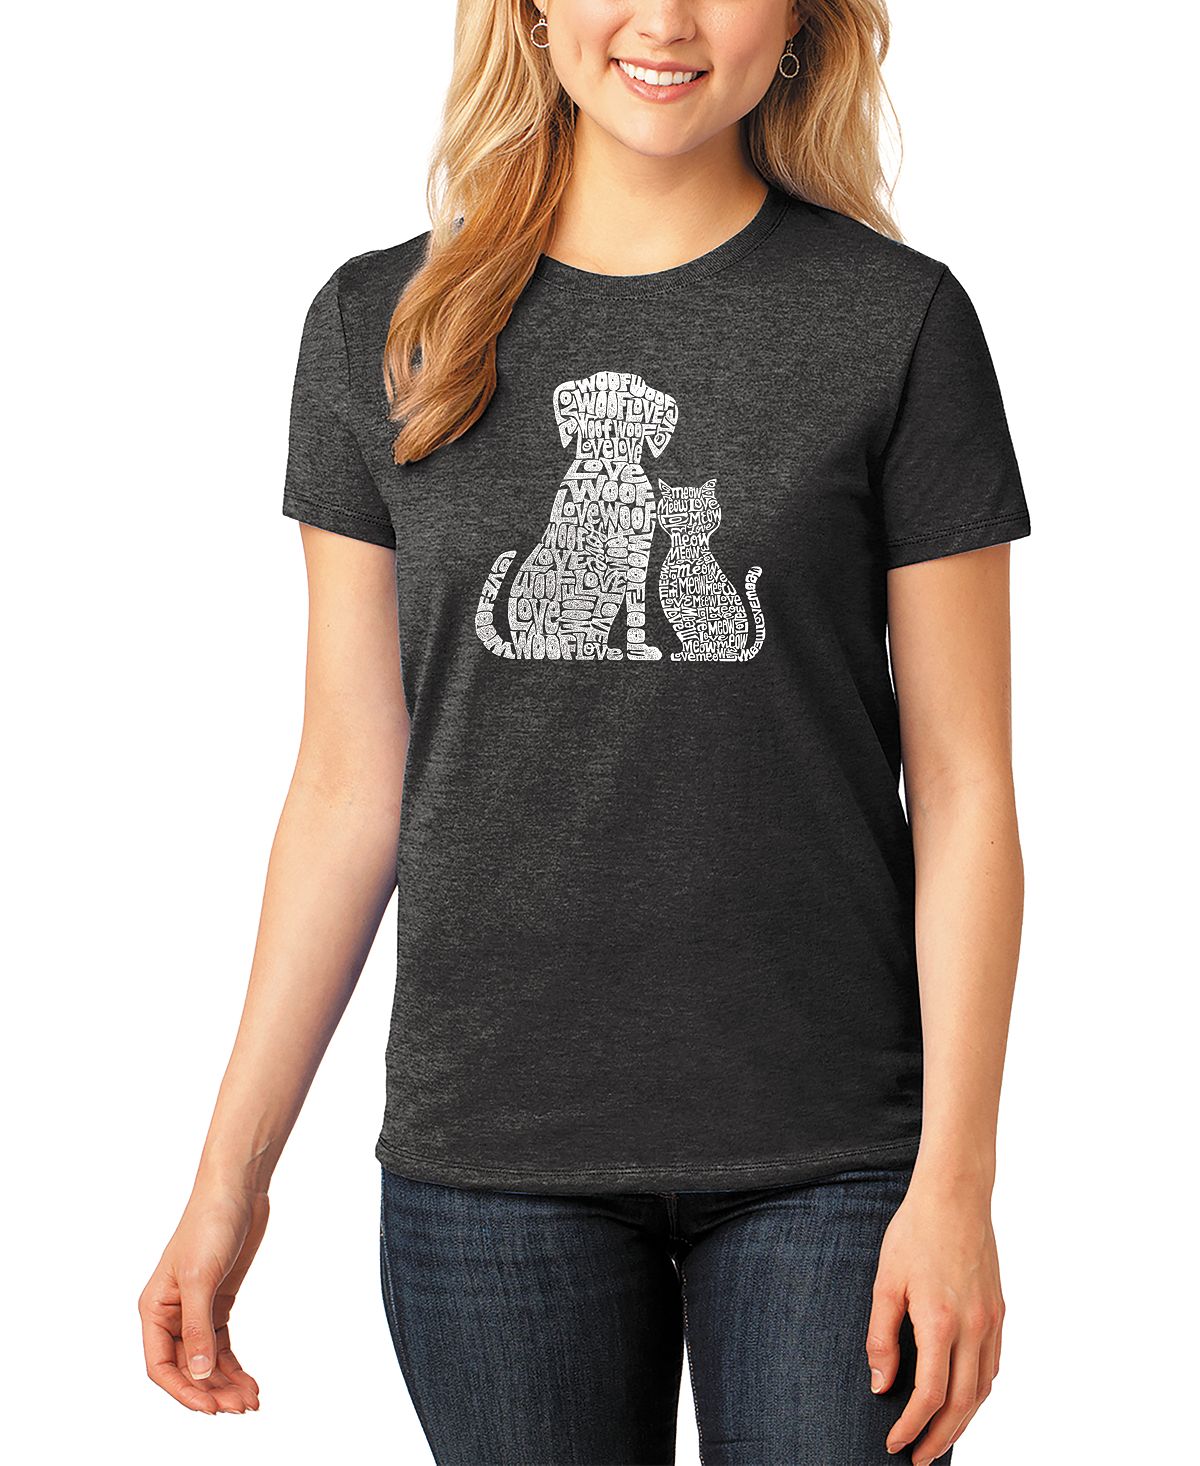 Женская футболка premium blend word art dogs and cats LA Pop Art, черный